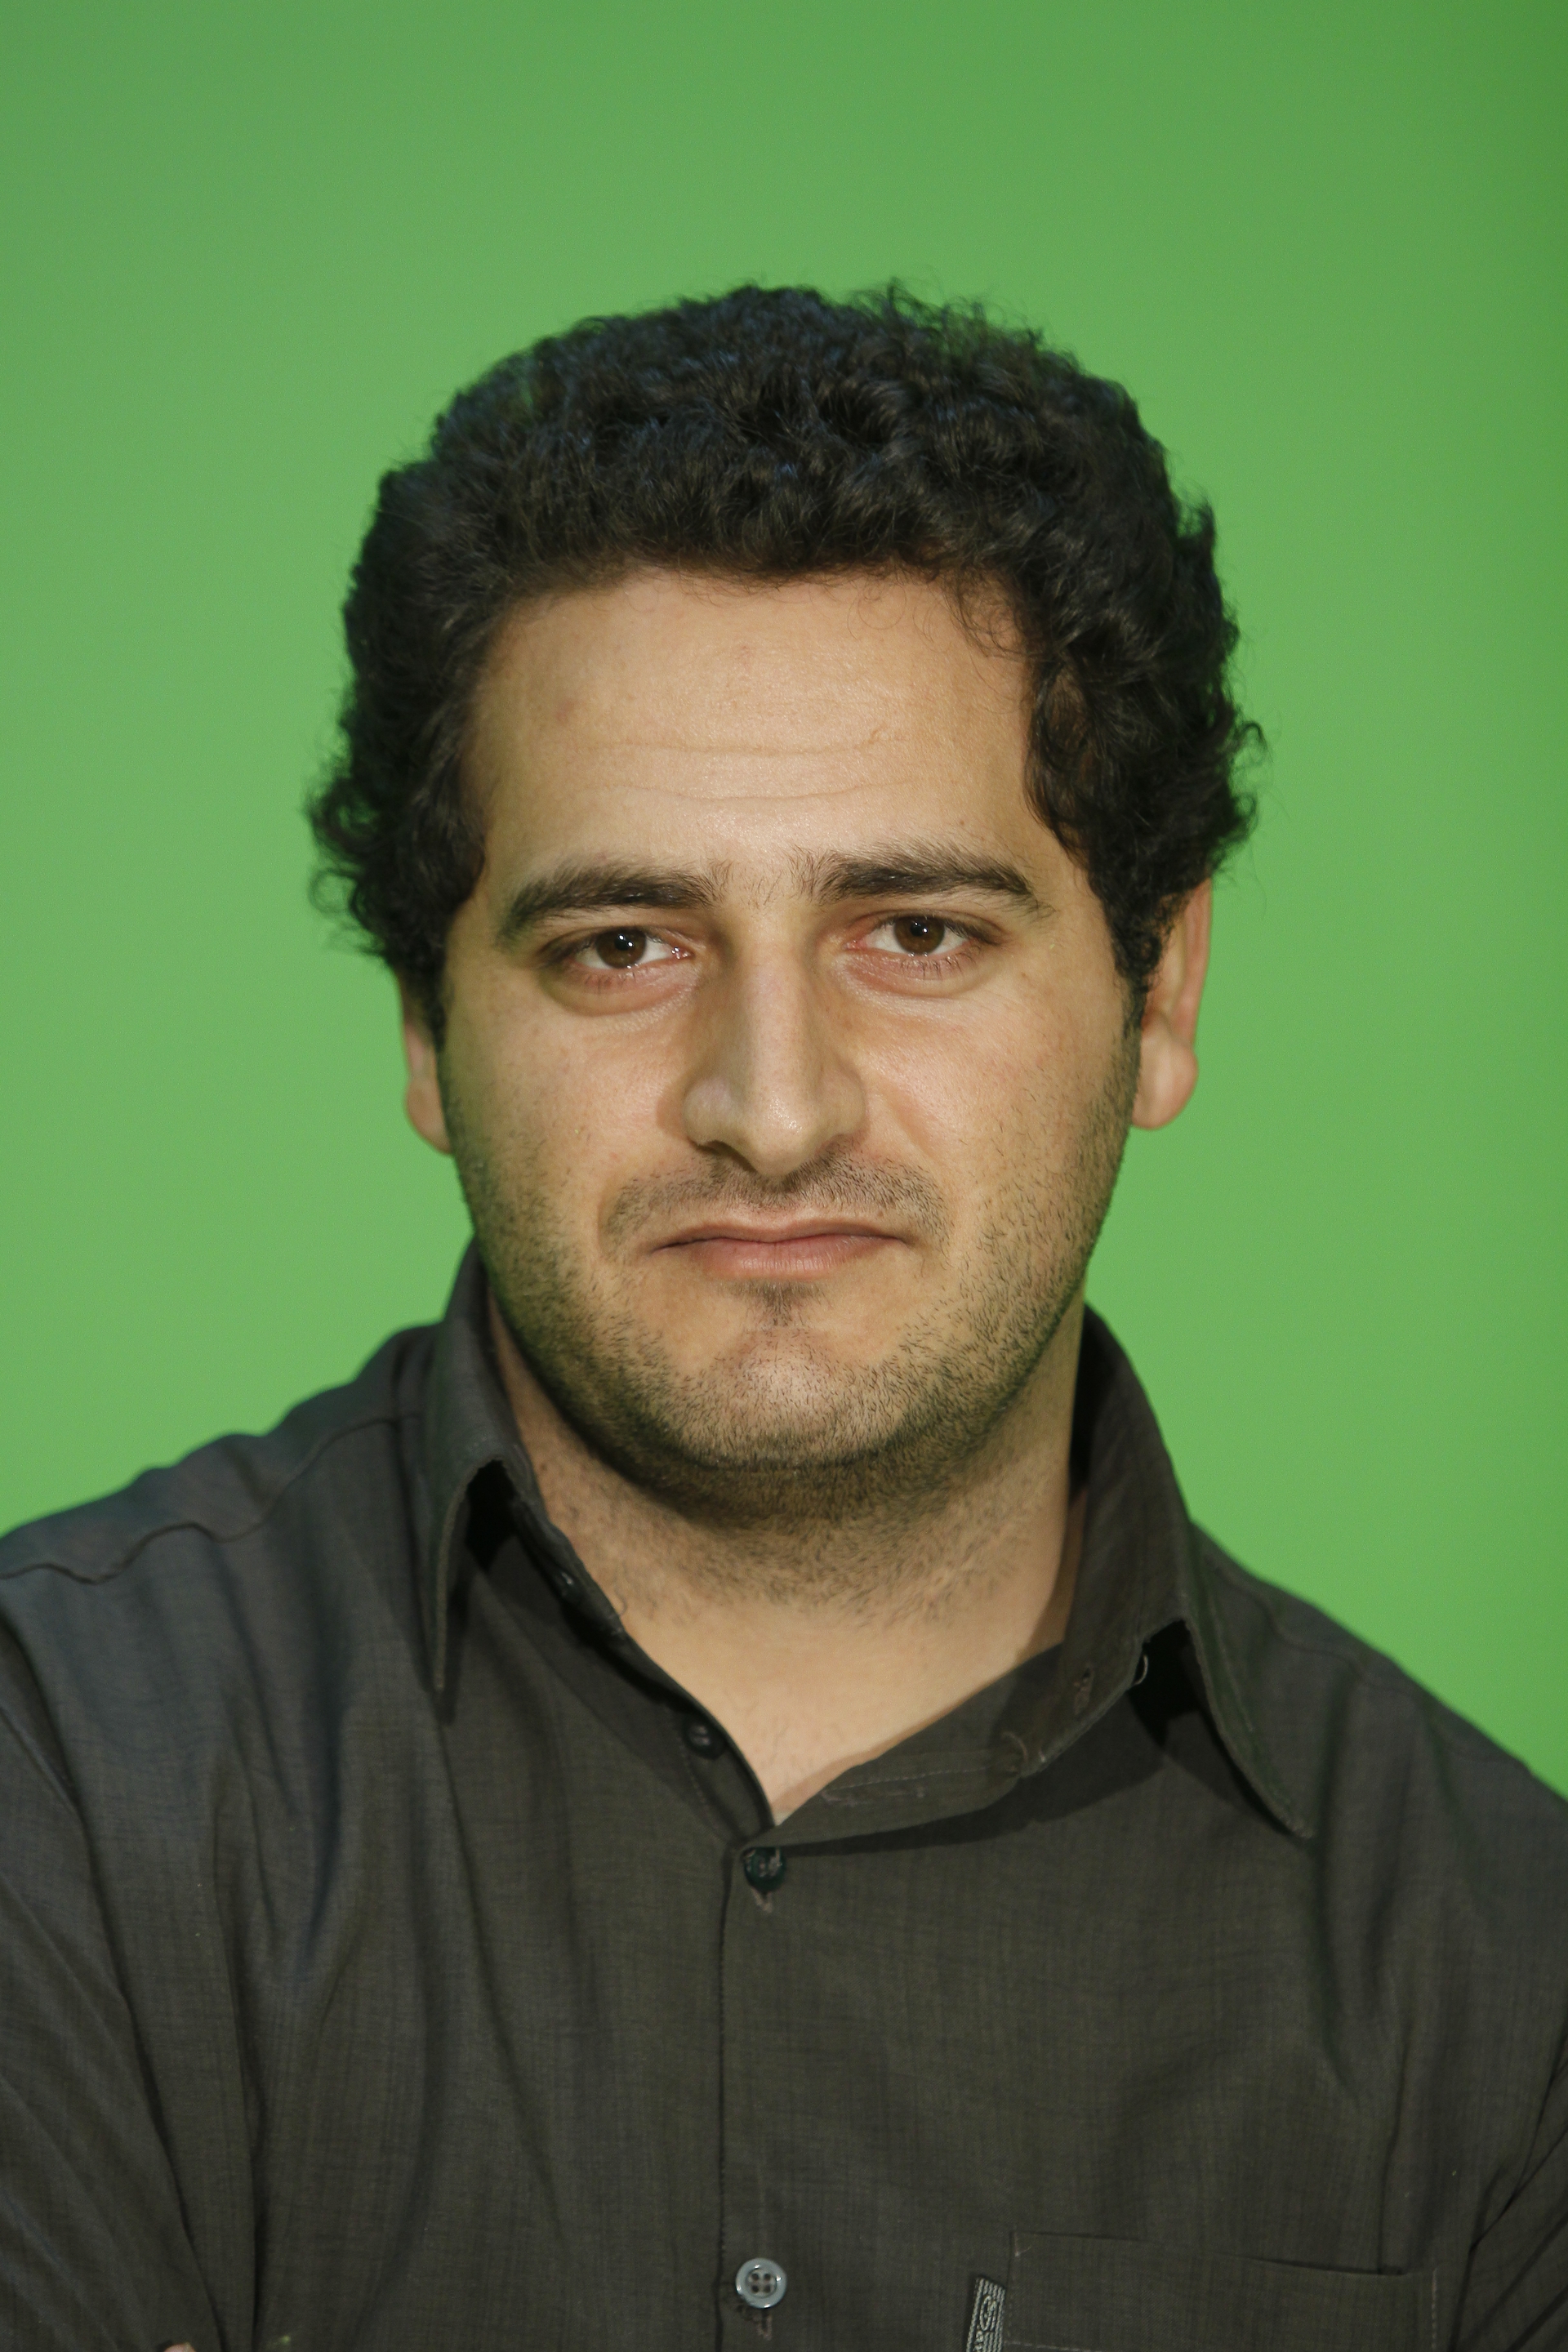 تصویری از سعید خلیلی، جلوه‌های ویژه بصری و کامپوزیت سینما و تلویزیون در حال بازیگری سر صحنه یکی از آثارش